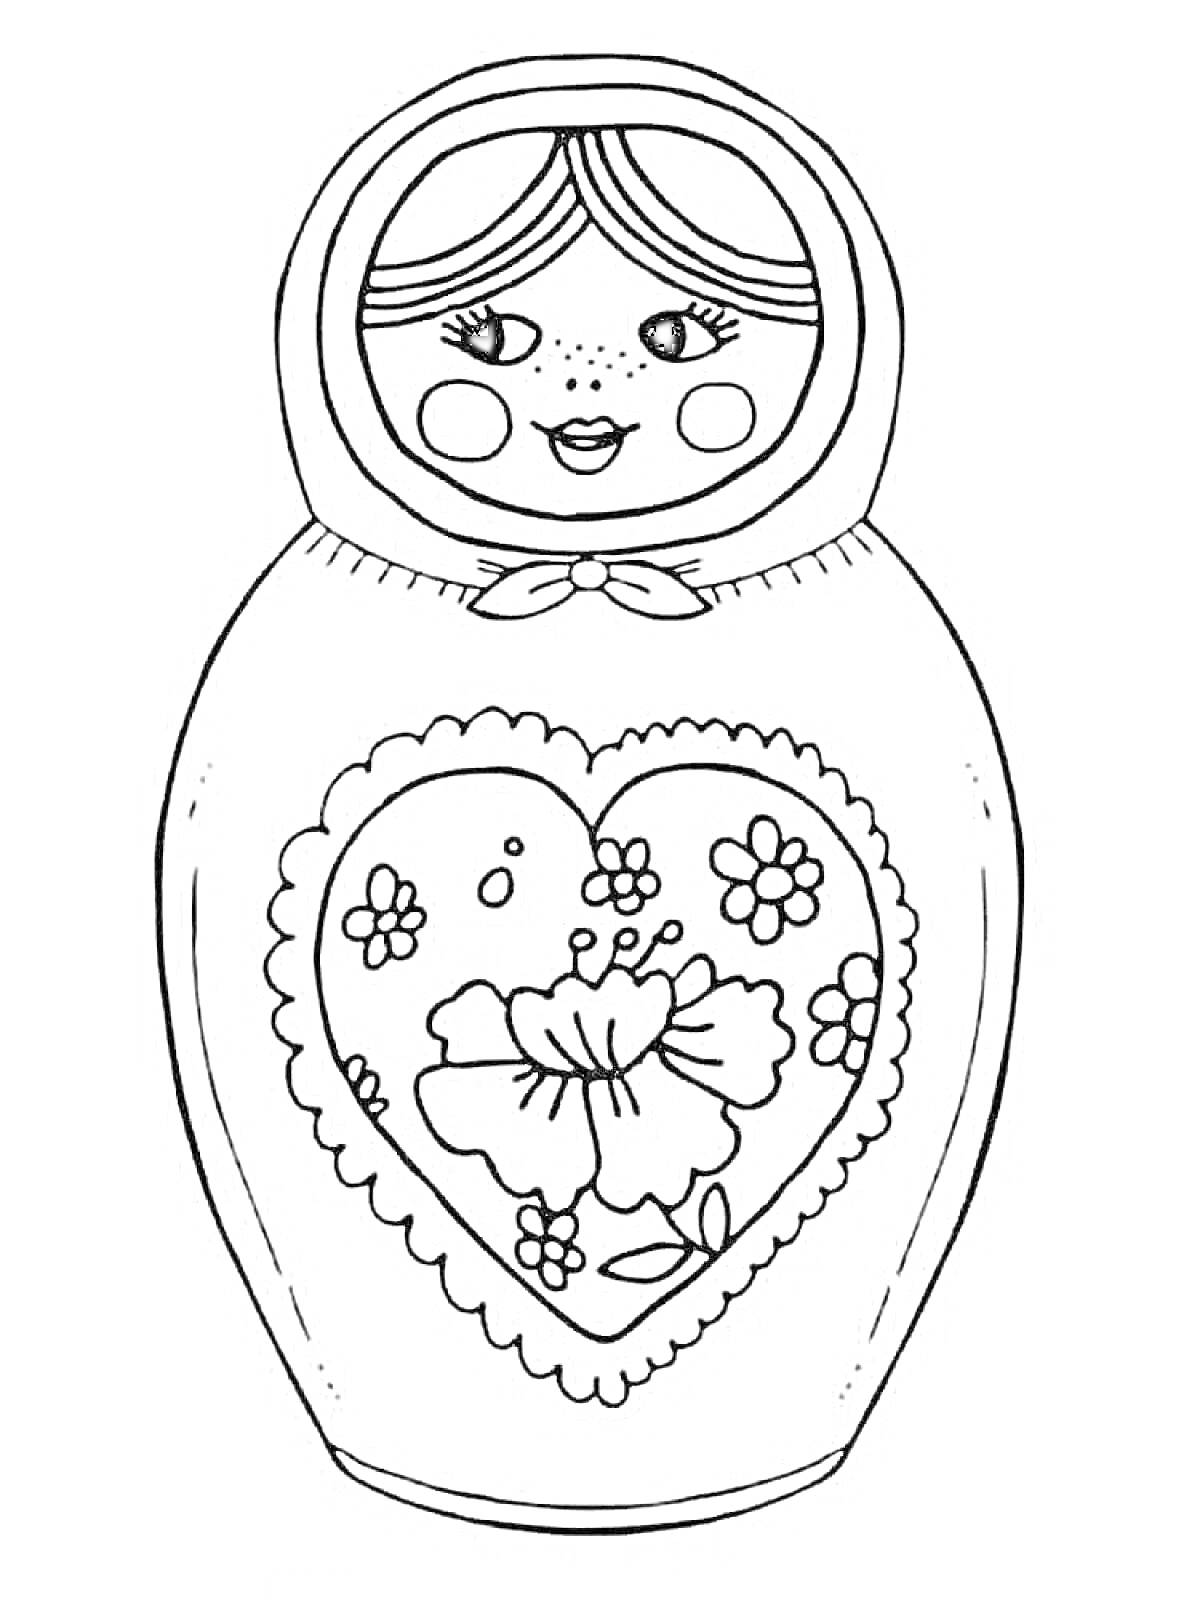 Раскраска Матрешка с сердцем и цветами на груди